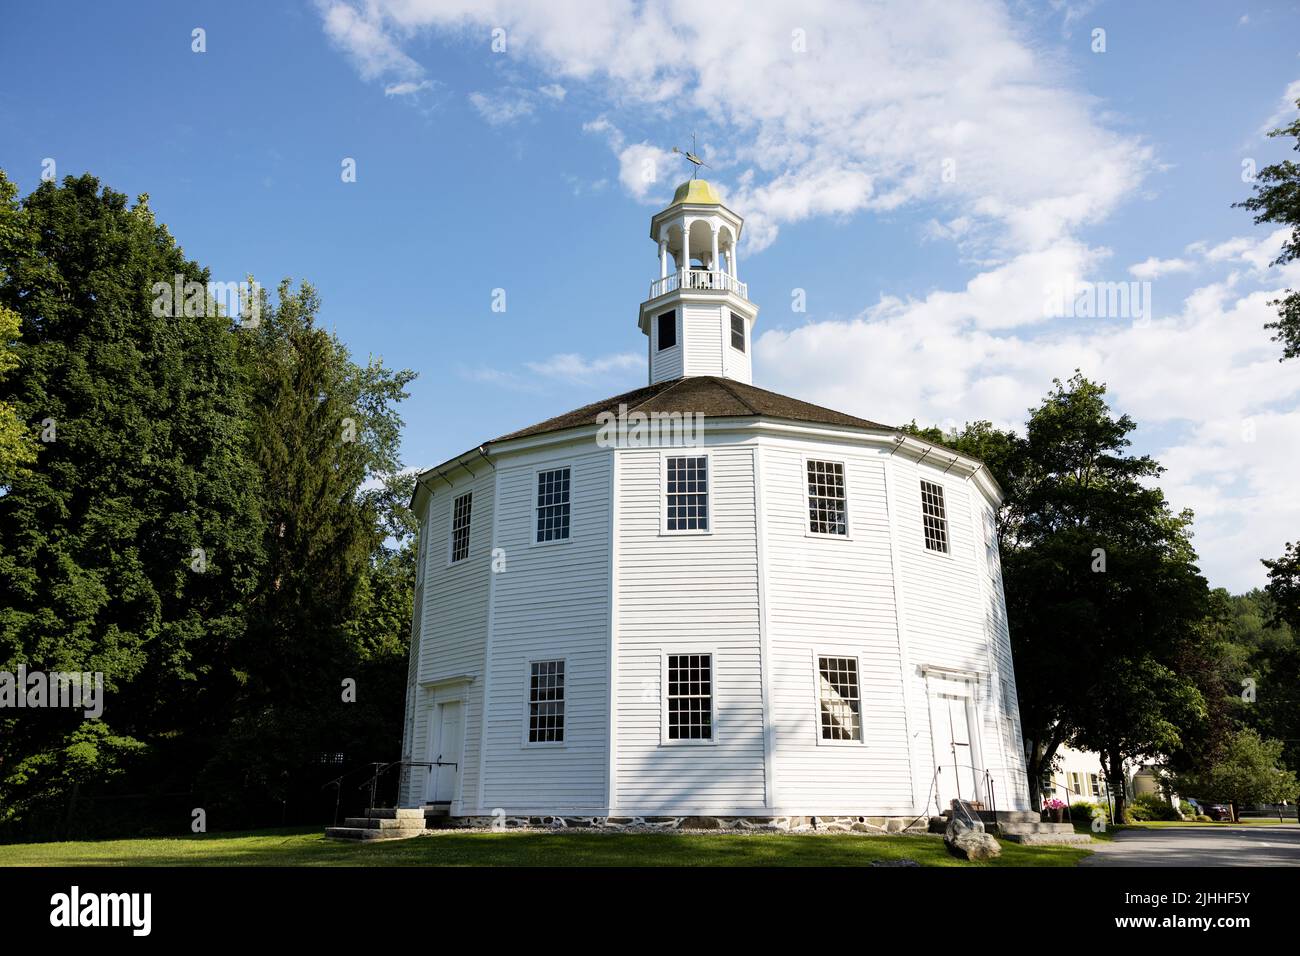 La chiesa rotonda, un edificio storico a sedici lati a Richmond, Vermont, USA. Foto Stock